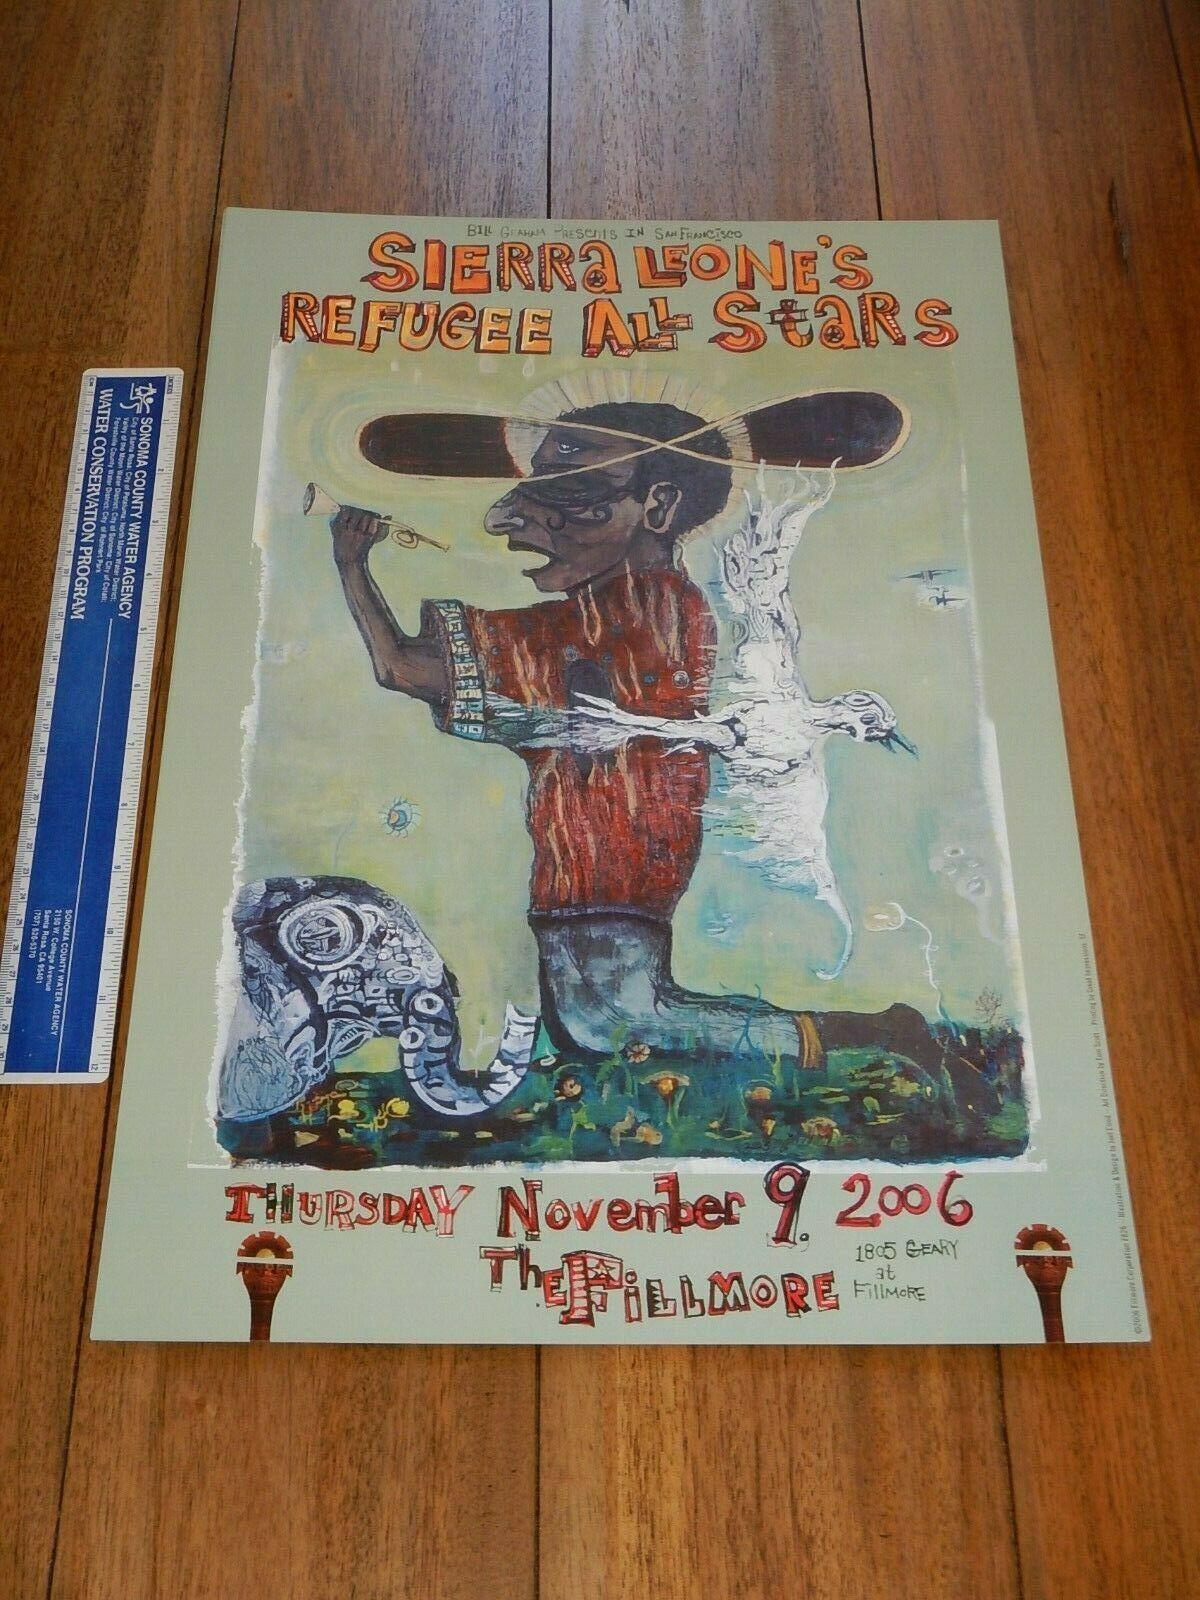 2006 Sierra Leone's Refugee All Stars Fillmore Concert Poster  F826, Joel Elrod